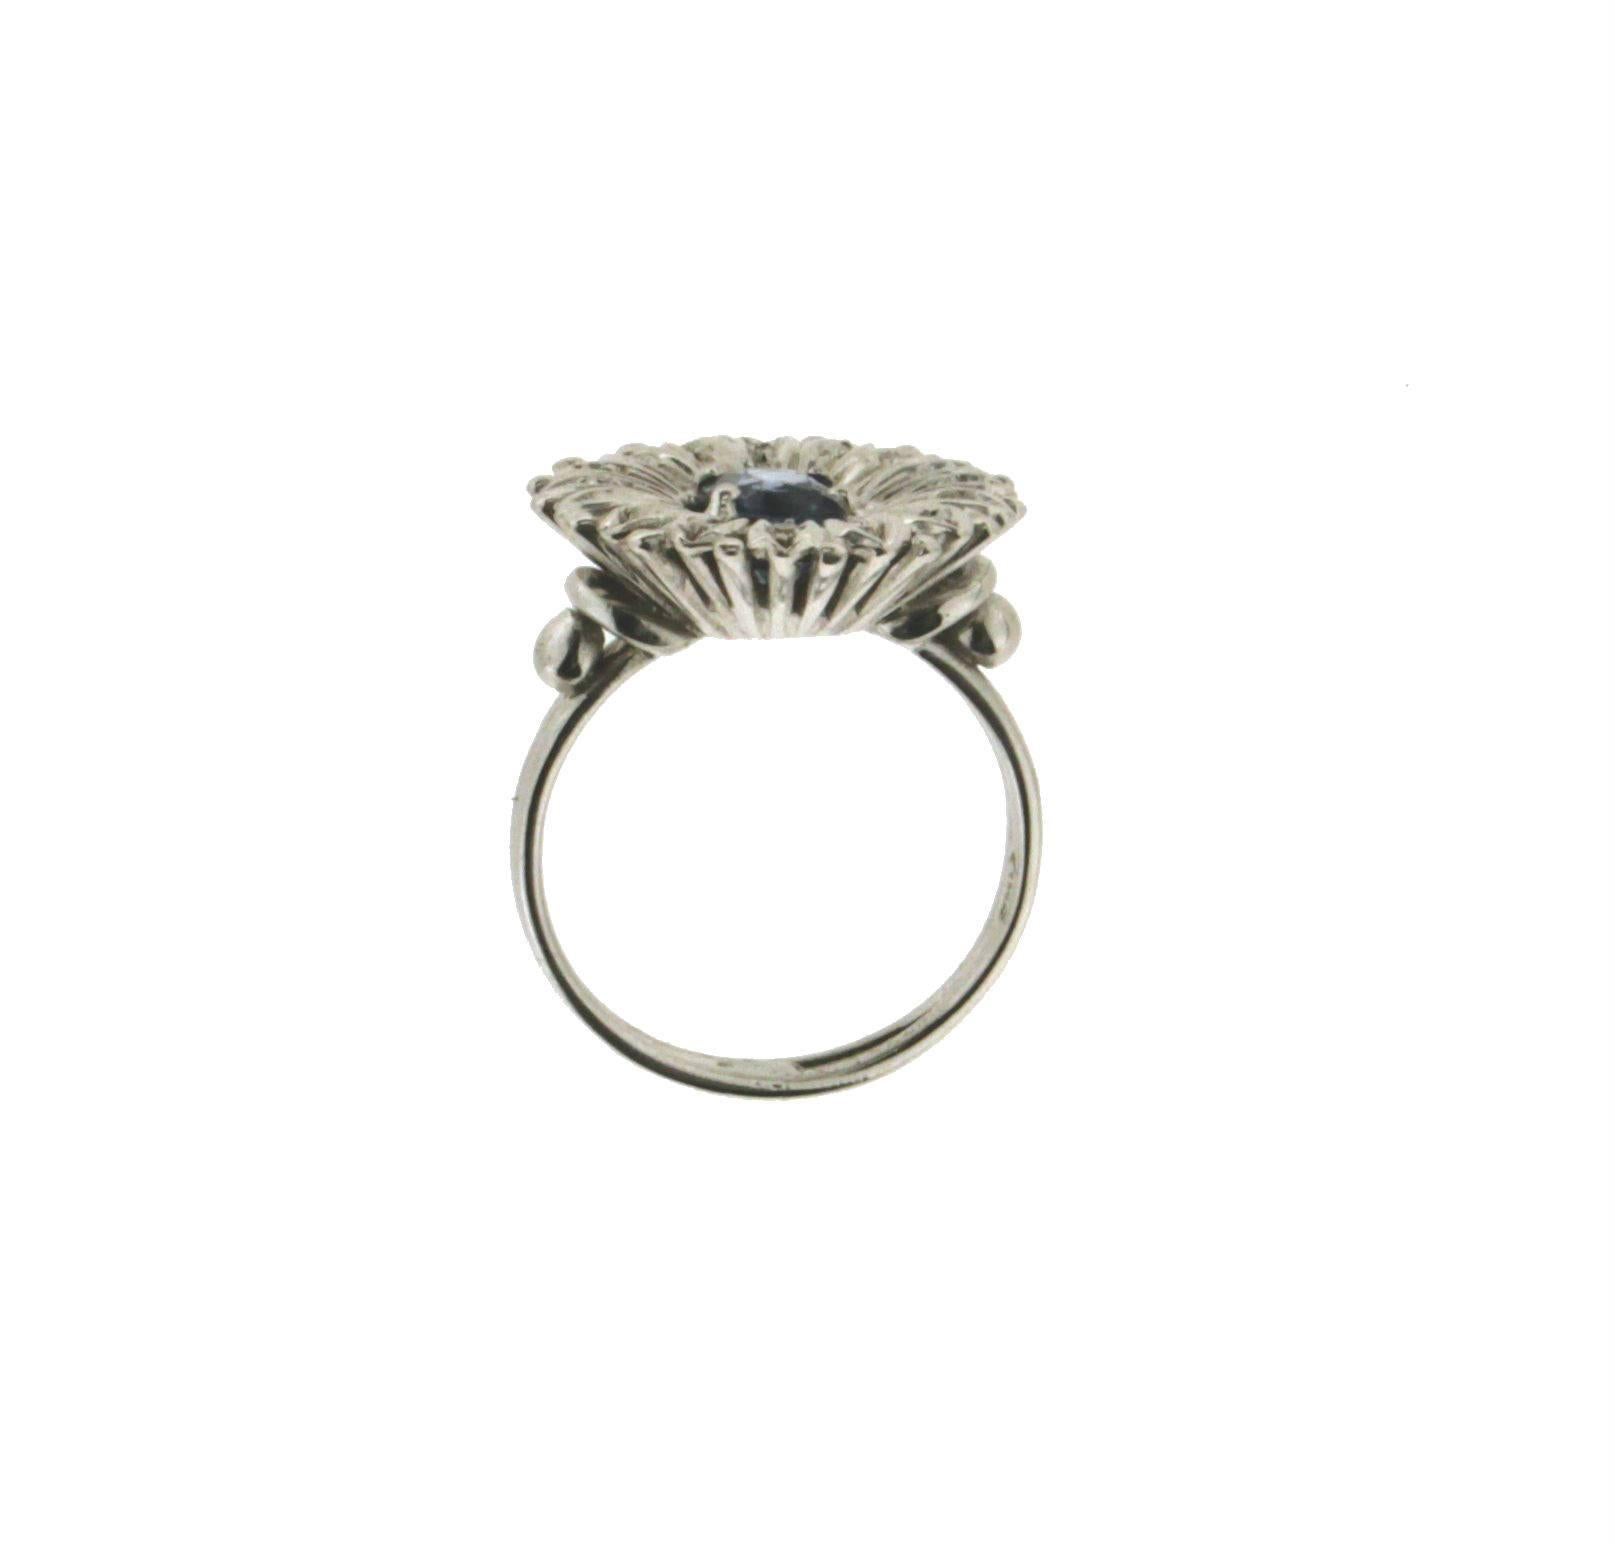 Sapphire white gold 18 karat diamonds cocktail ring 

Ring weight 7.30 grams
Ring size 13.50 ITA 6.75 U.S